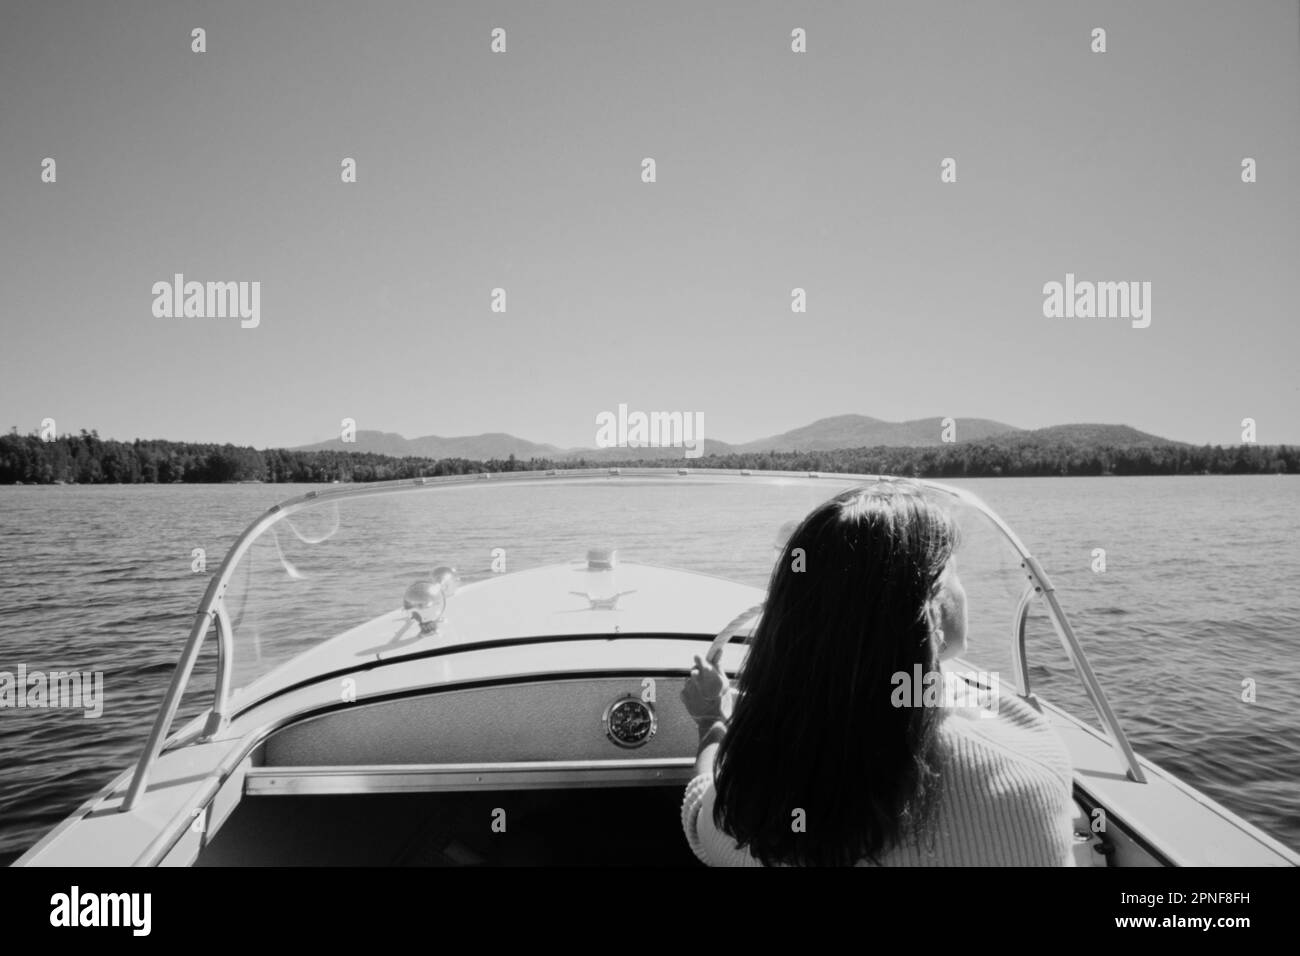 Stati Uniti, New York, Santa Clara, Vista posteriore della donna che guida motoscafo sul lago di Saranac superiore, in bianco e nero Foto Stock